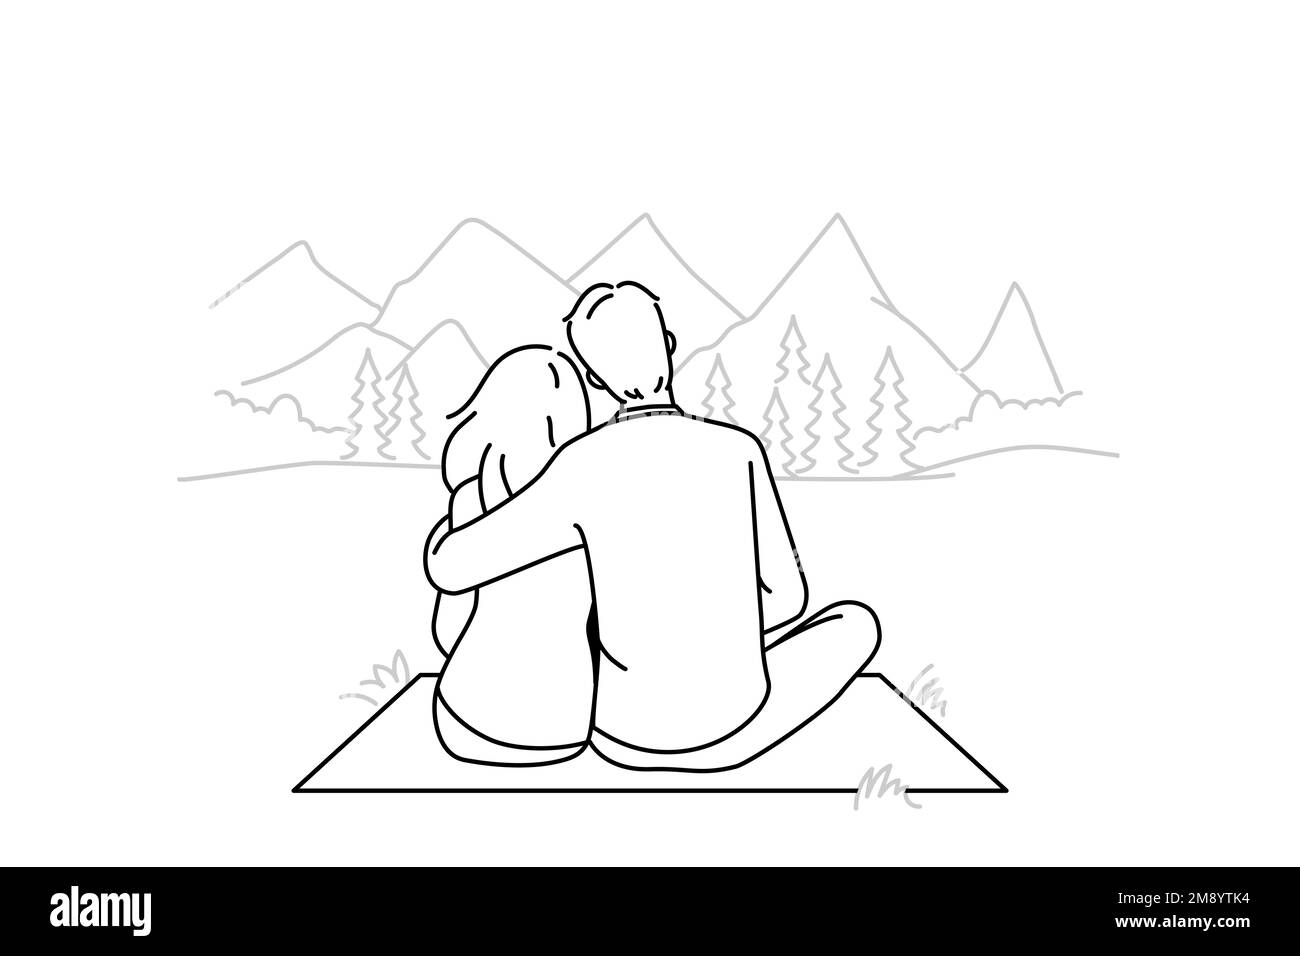 Coppia felice seduta in montagna godendo di un weekend rilassante insieme. Uomo e donna abbracciano la natura selvaggia all'aperto. Illustrazione vettoriale. Illustrazione Vettoriale